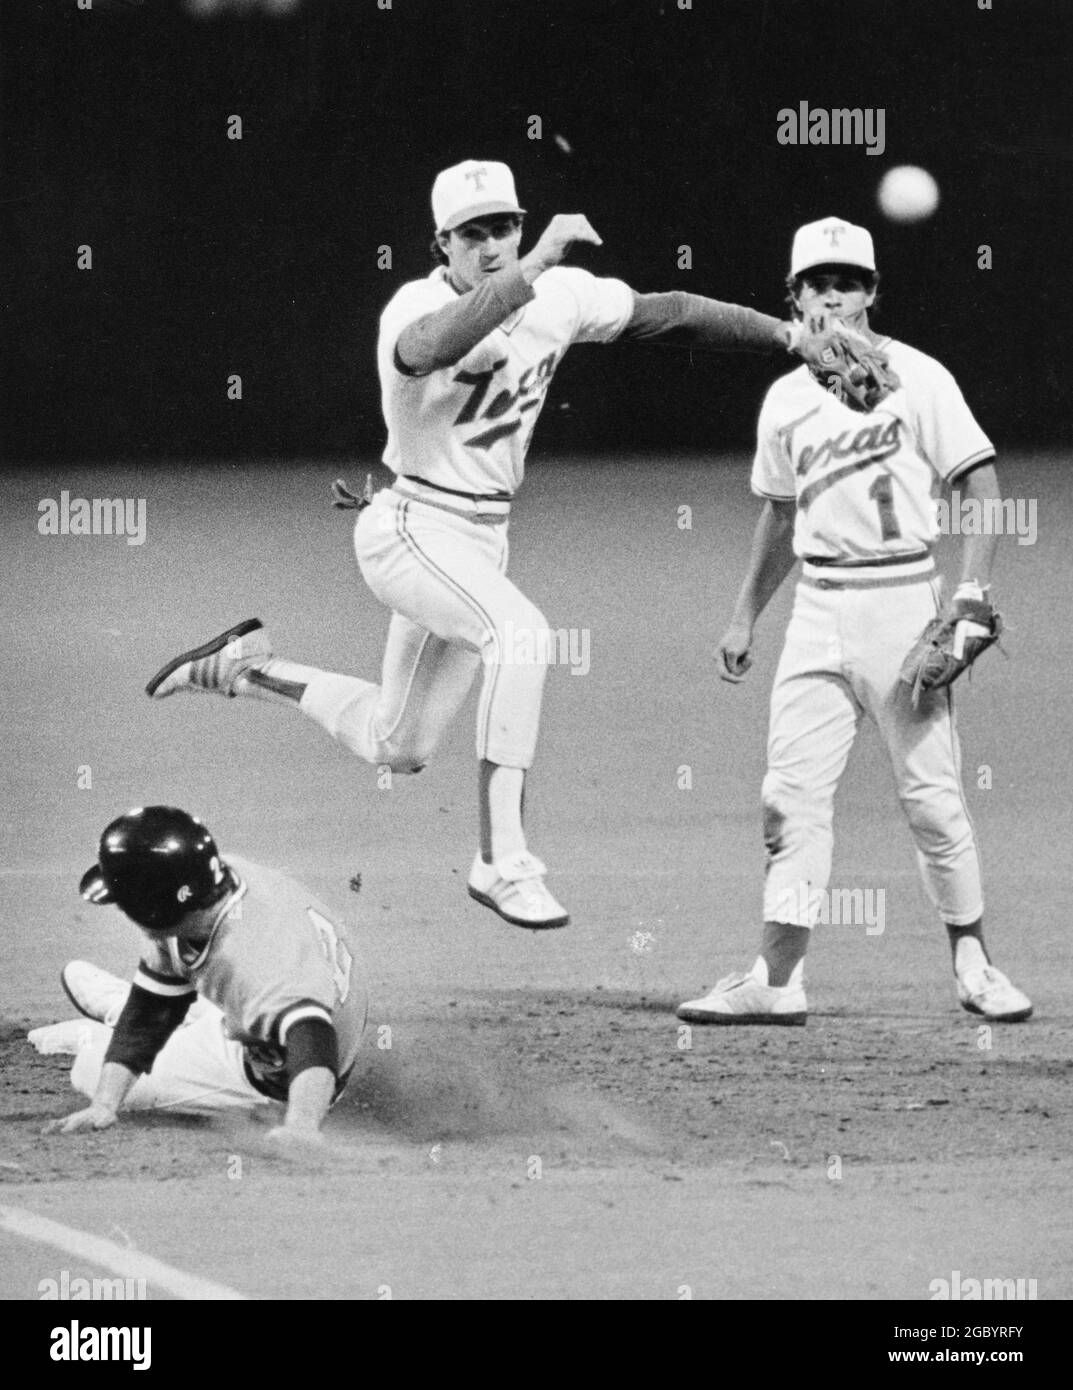 Austin Texas USA um 1982: Action zwischen dem Baseballteam der University of Texas und den Gegnern auf dem Heimfeld der UT; Shortstop wirft den Ball in die erste Basis, während der Läufer in die zweite Basis gleitet. ©Bob Daemmrich Stockfoto